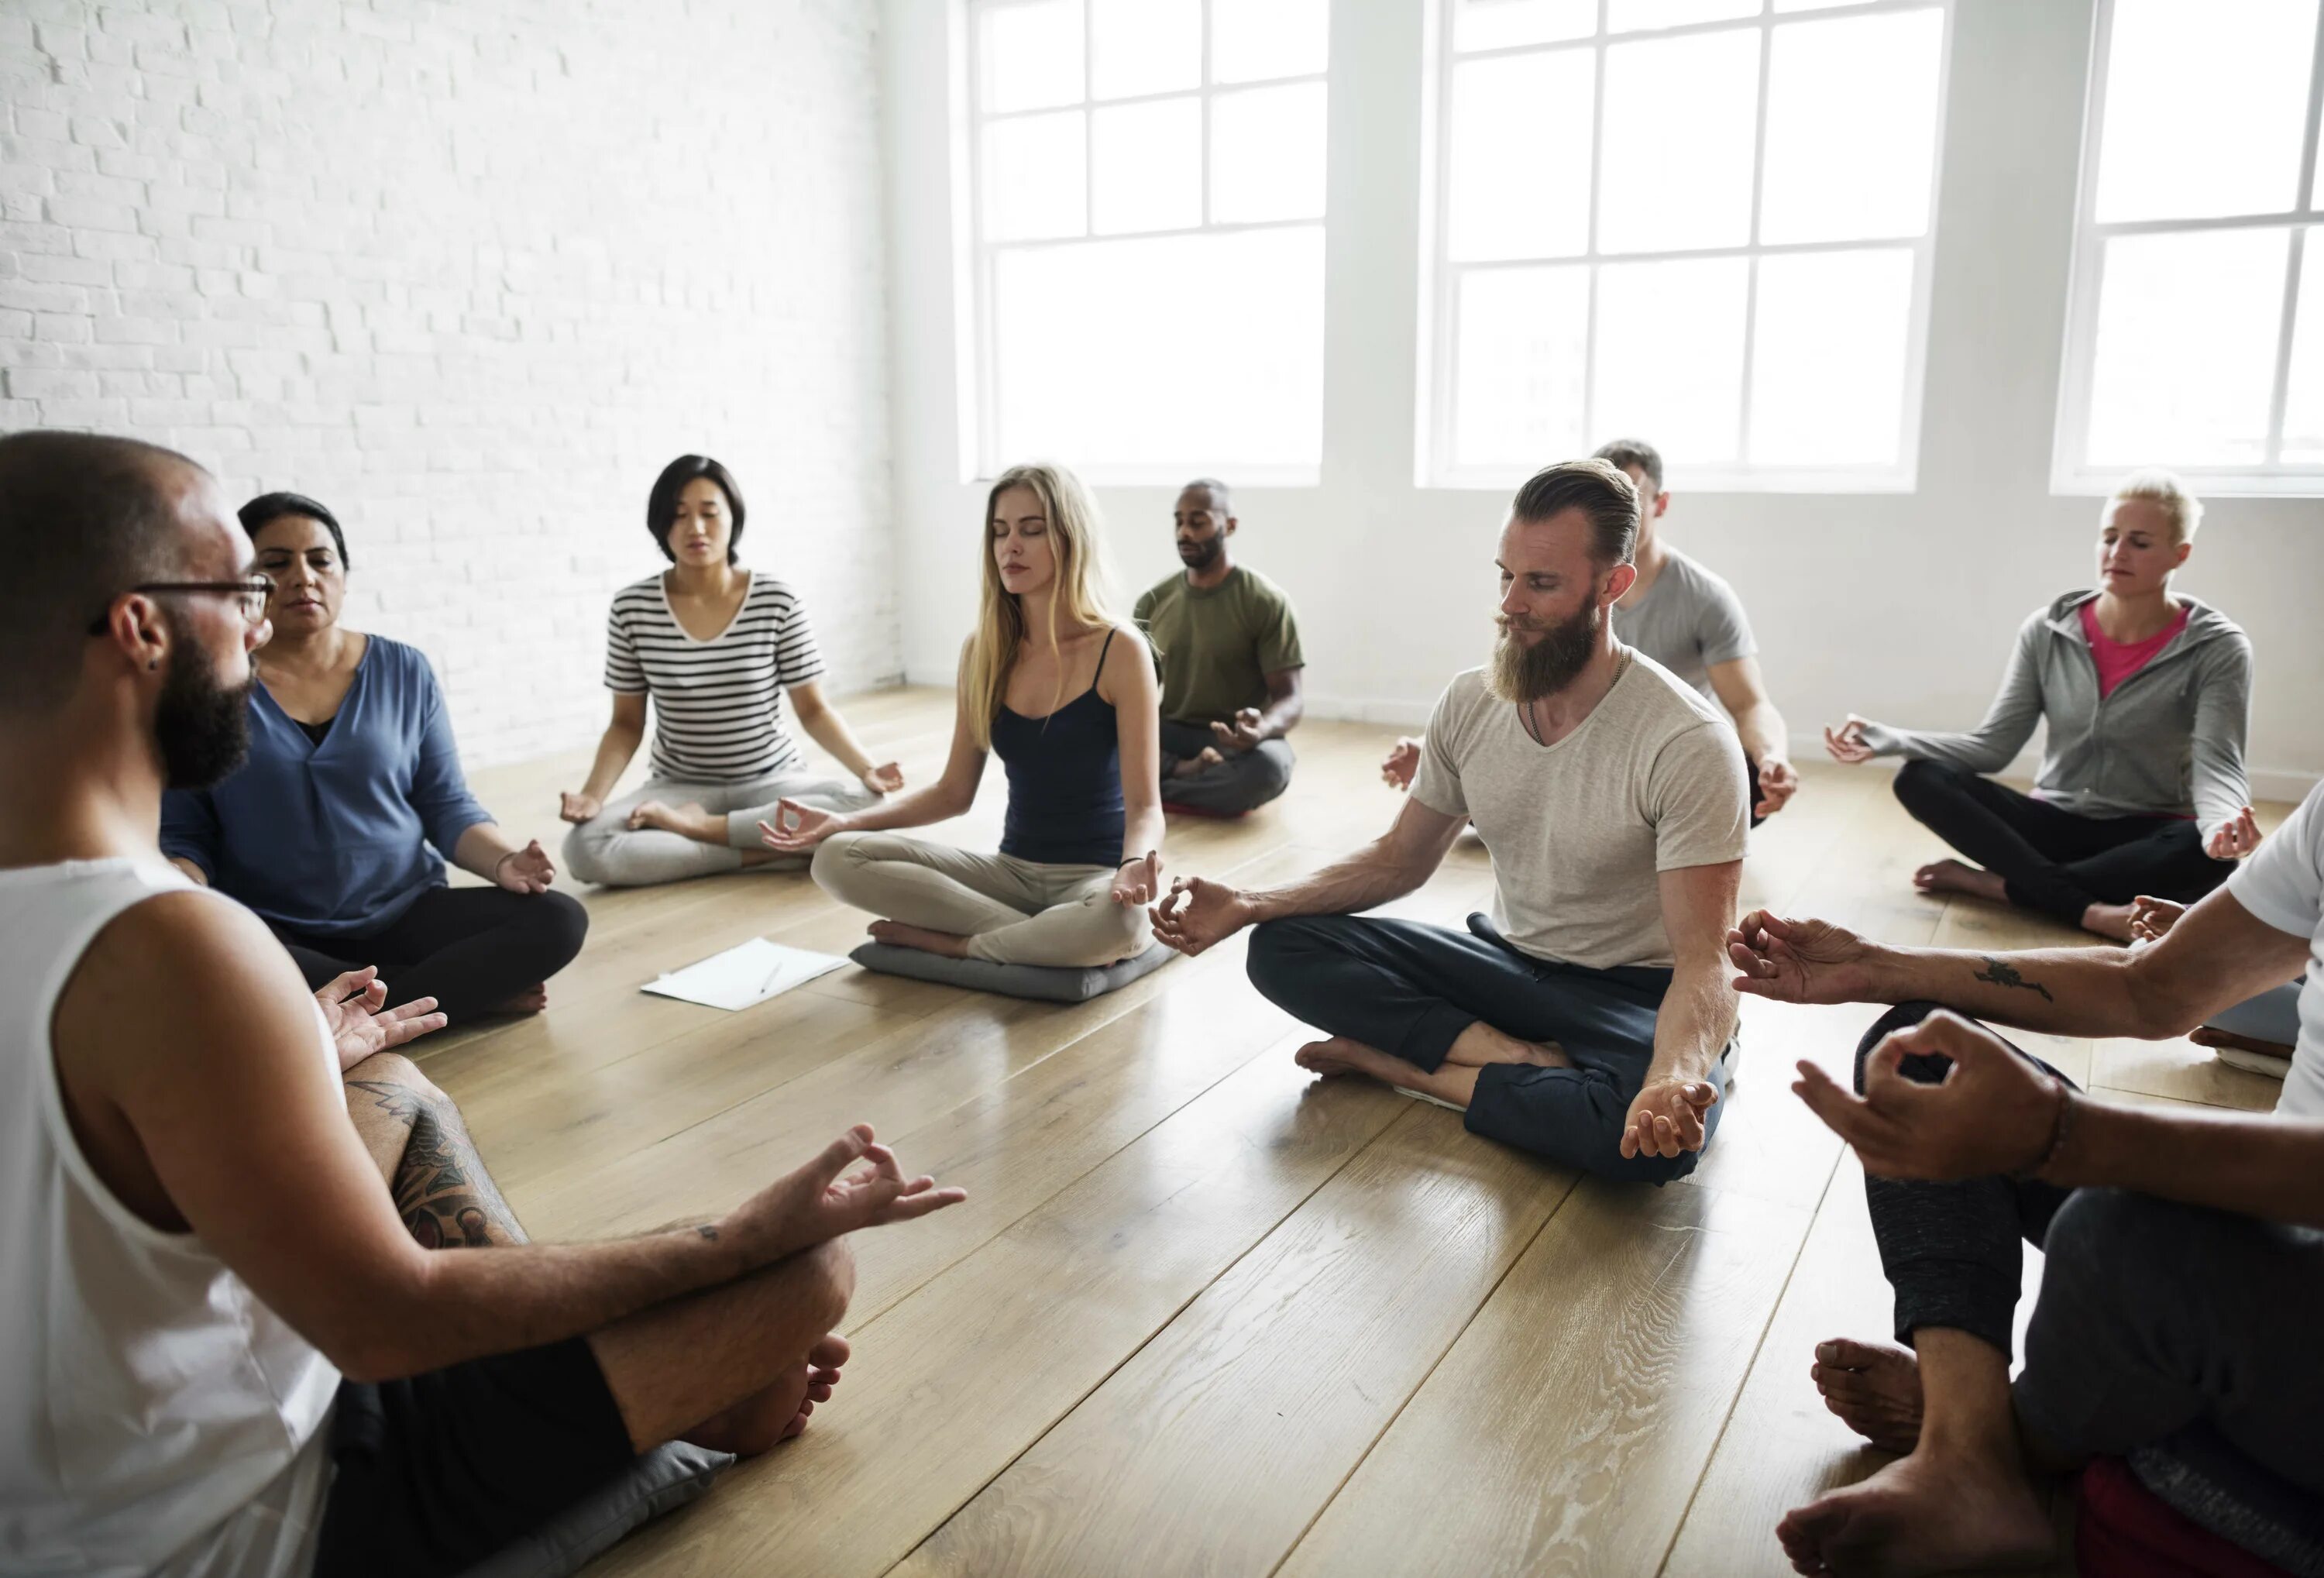 Групповая медитация. Медитация группа людей. Группа людей медитируют. Коллективная медитация.